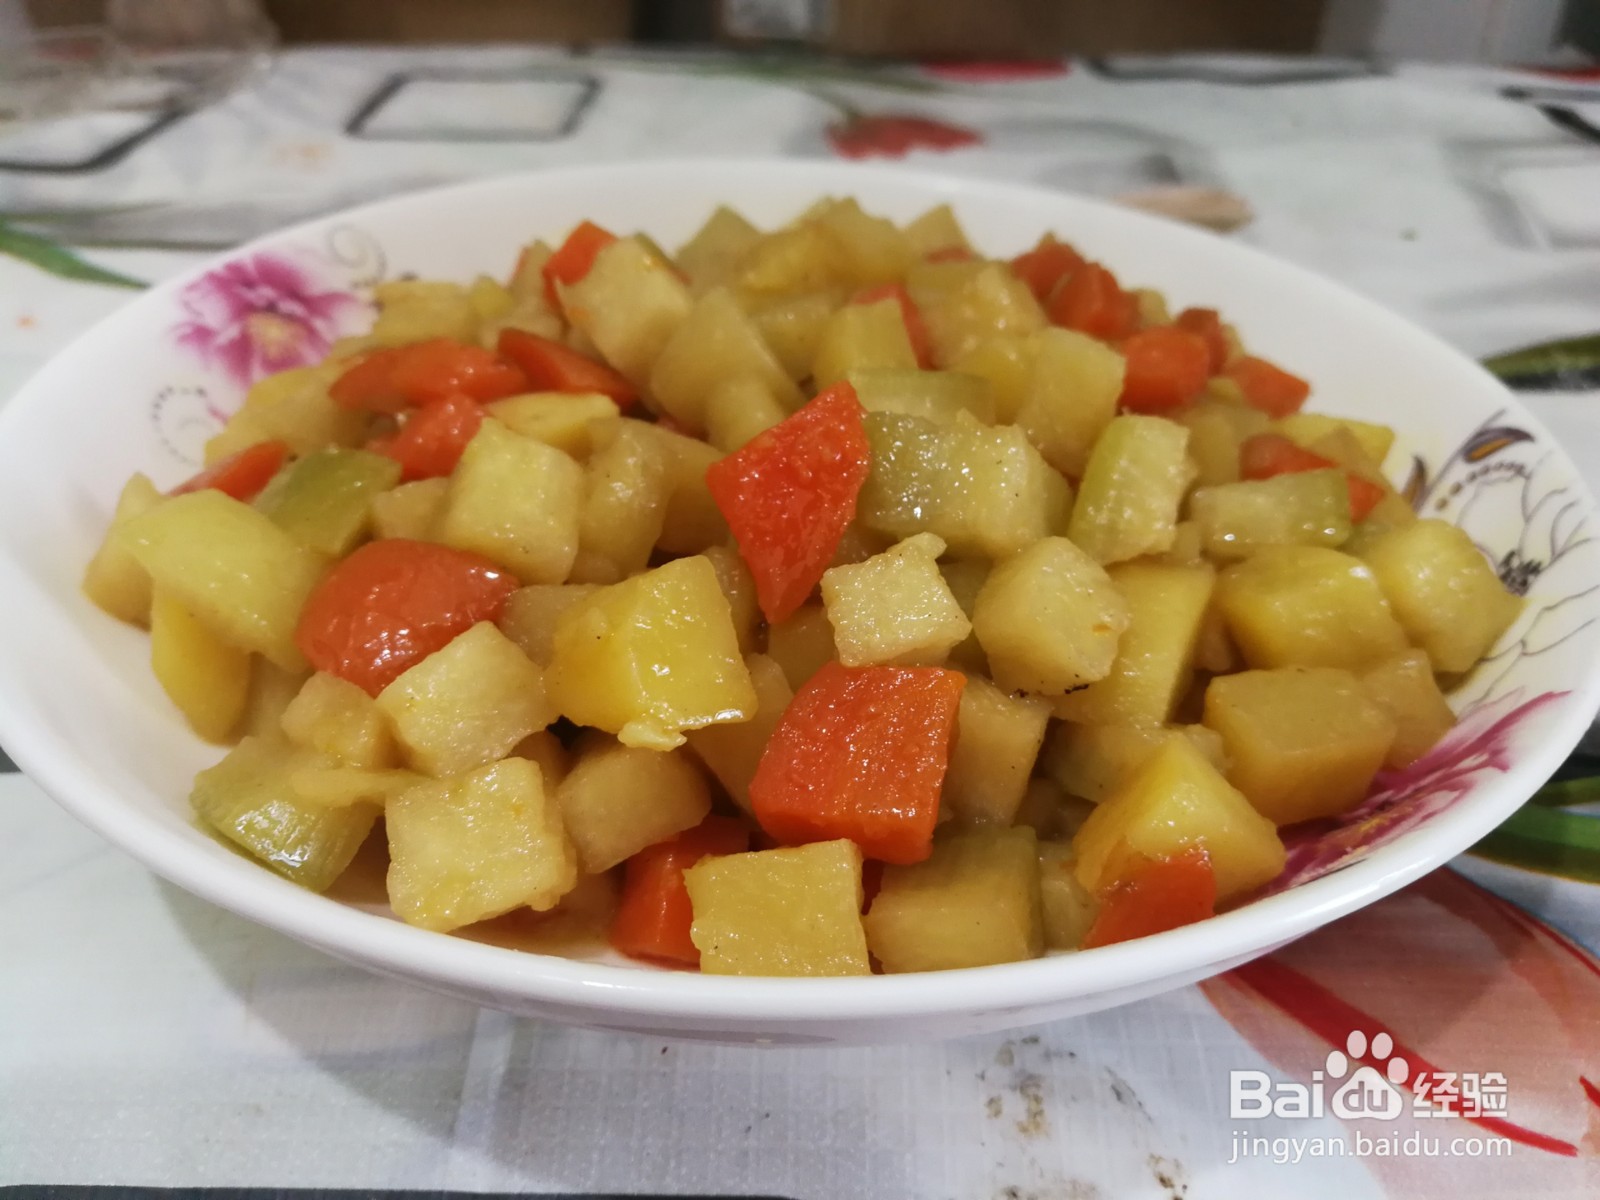 今天用土豆,青萝卜,胡萝卜做一道炖菜,好吃又营养,做法分享一下